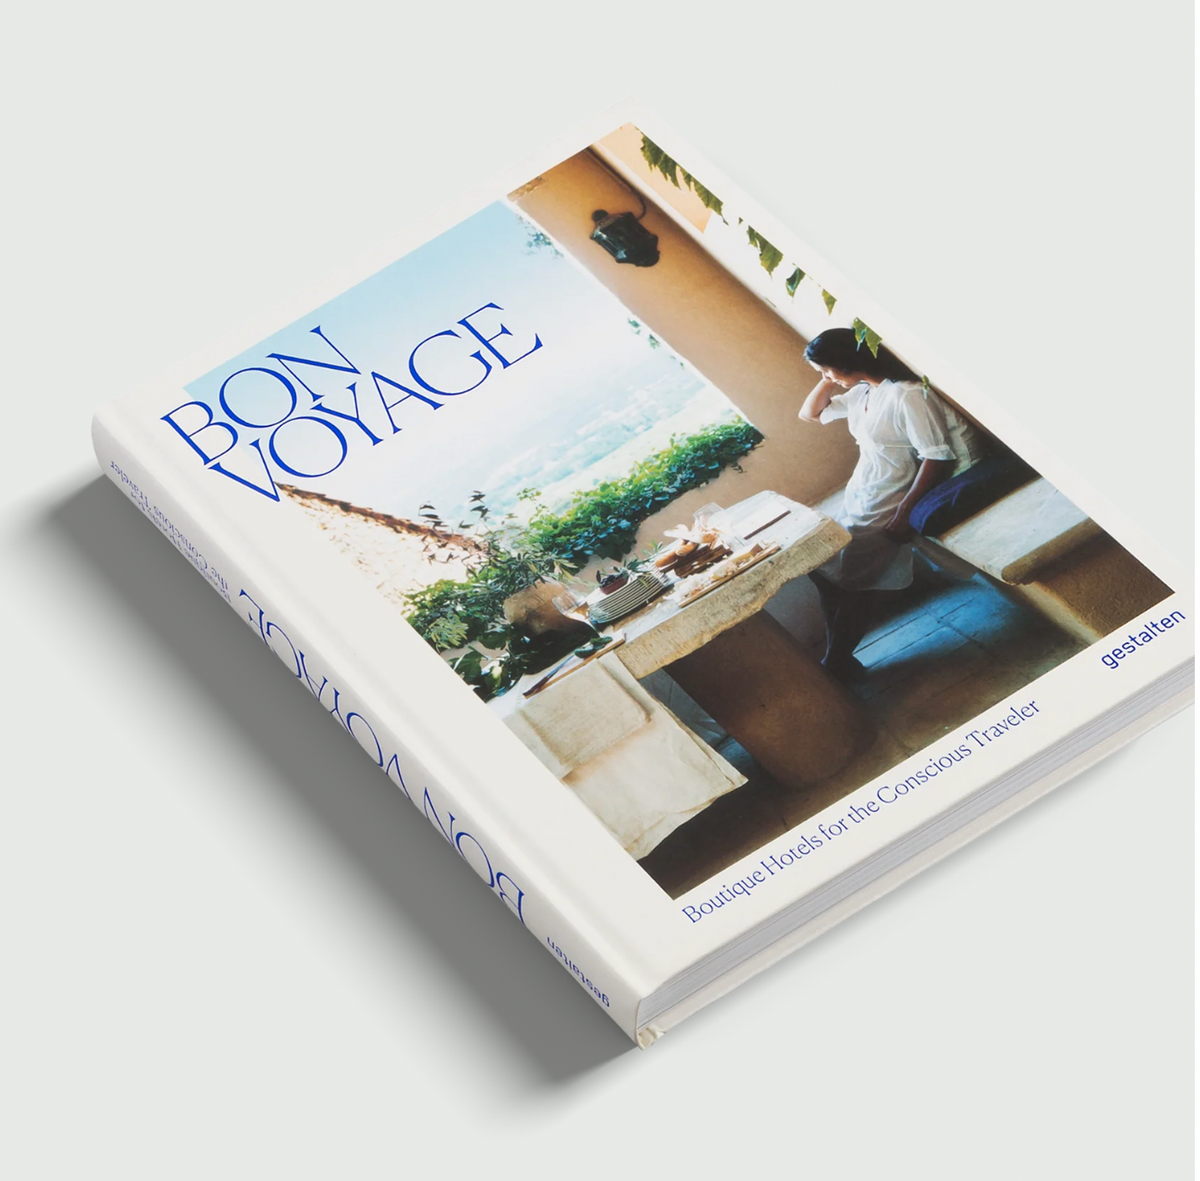 Gestalten Verlag BON VOYAGE, ein tolles Reisebuch und Coffee table book 